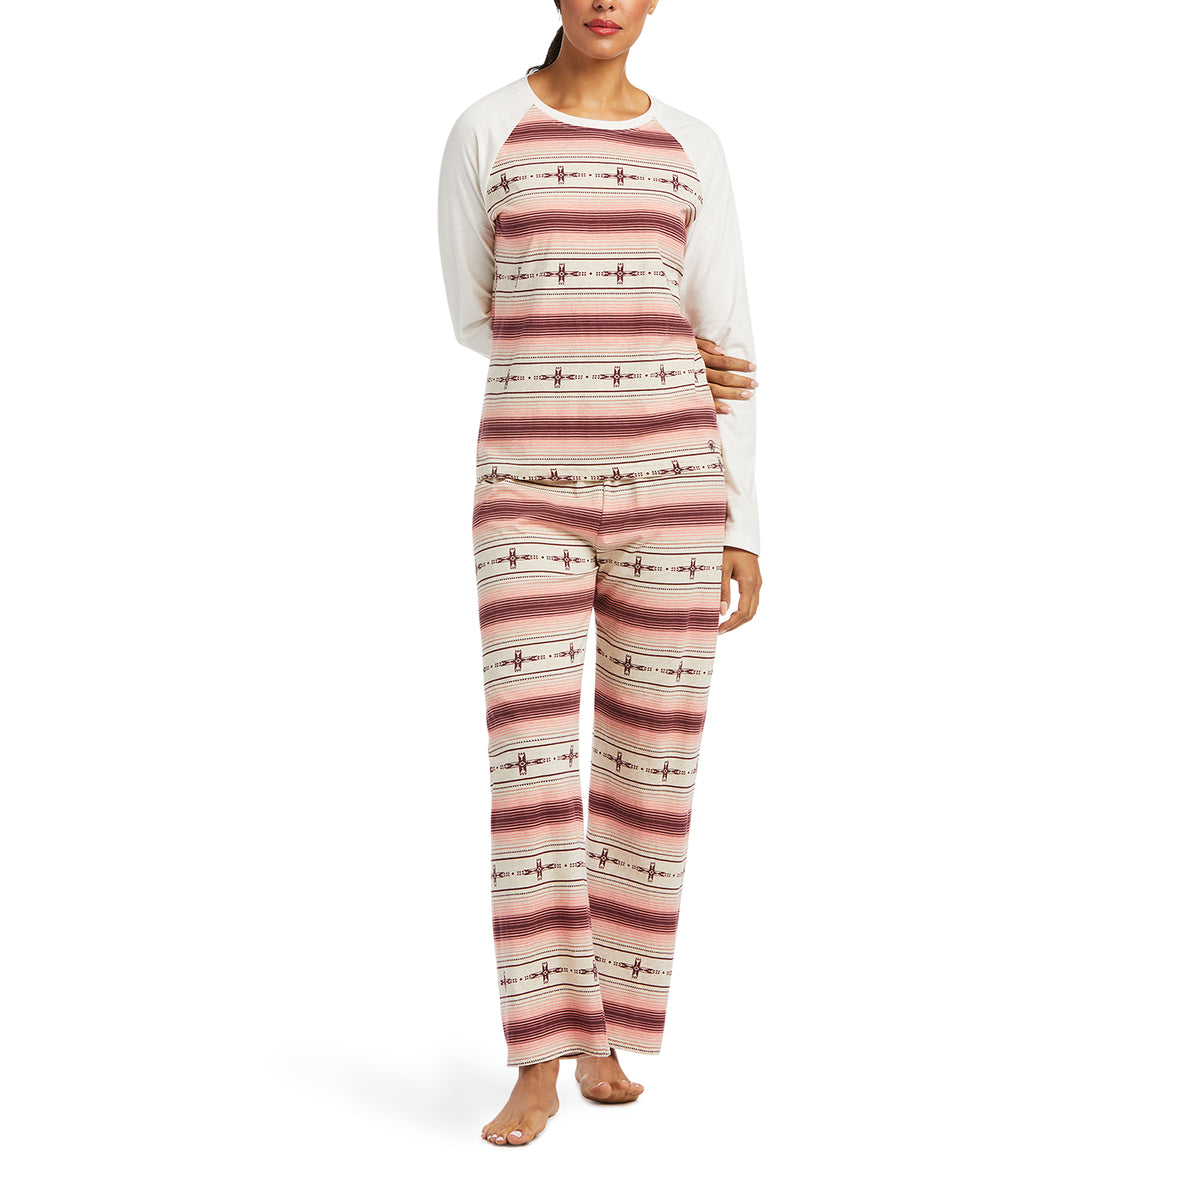 Women's Christmas Pajamas